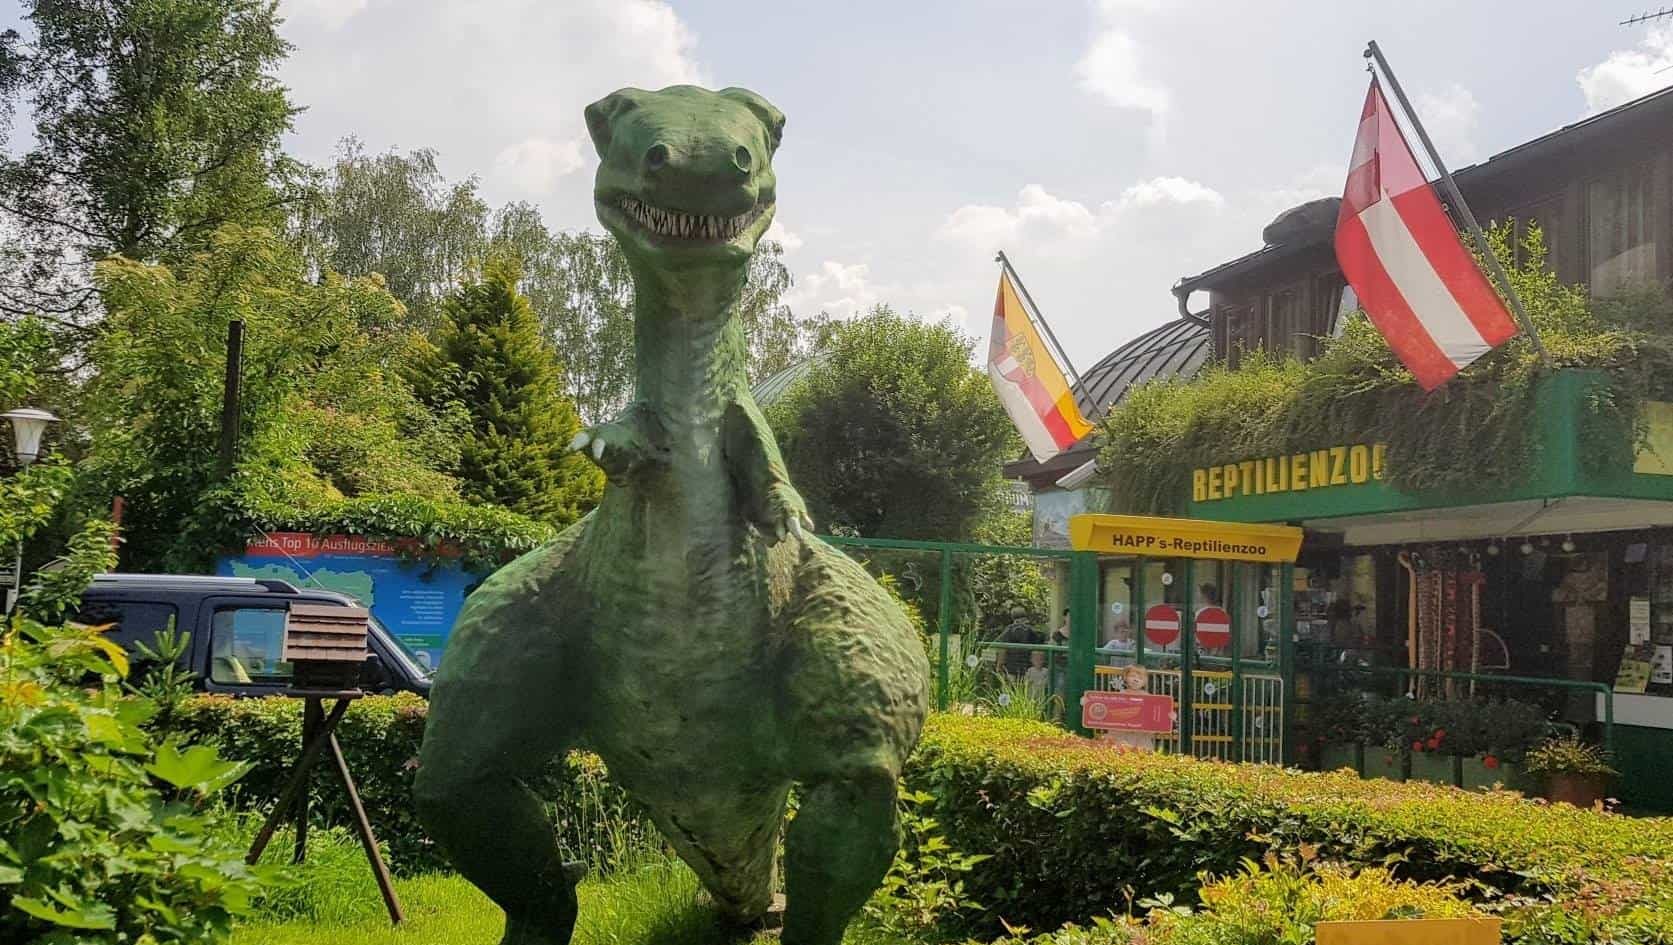 Dinosaurier am Eingang der Kärntner Sehenswürdigkeit Reptilienzoo Happ in Klagenfurt am Wörthersee